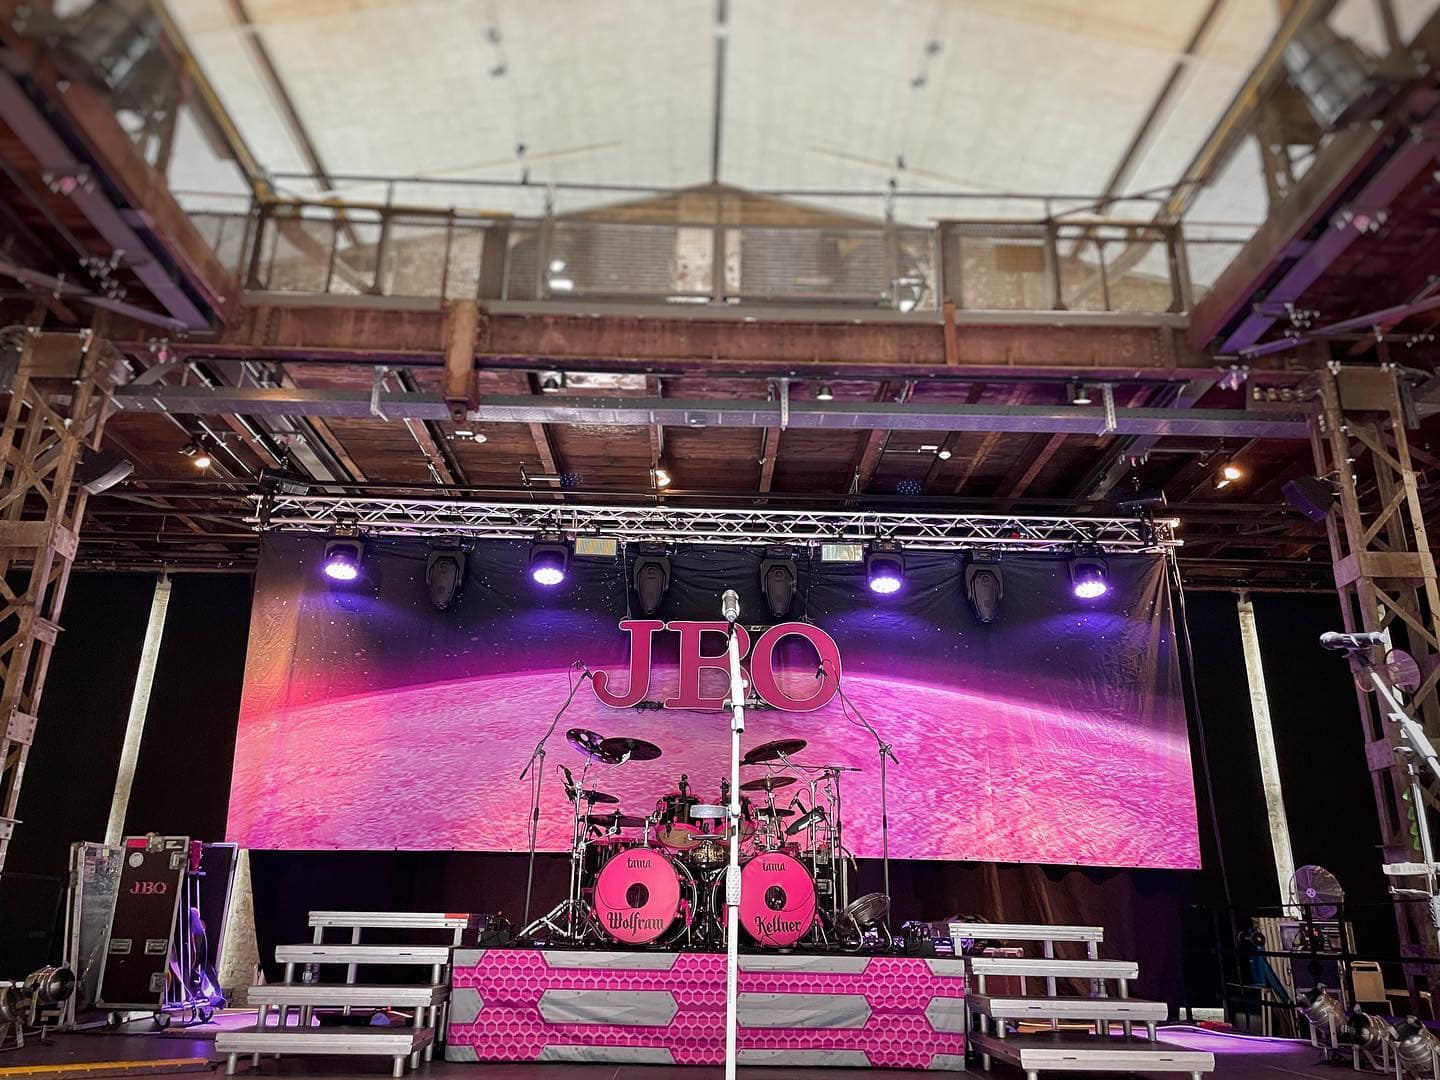 Instagram:Die Bühne ist angerichtet! 😃☺️ Tourstart heute in Bad Hersfeld - wir sind das erste mal hier. Sehr schöne Halle! 🤩 Es gi